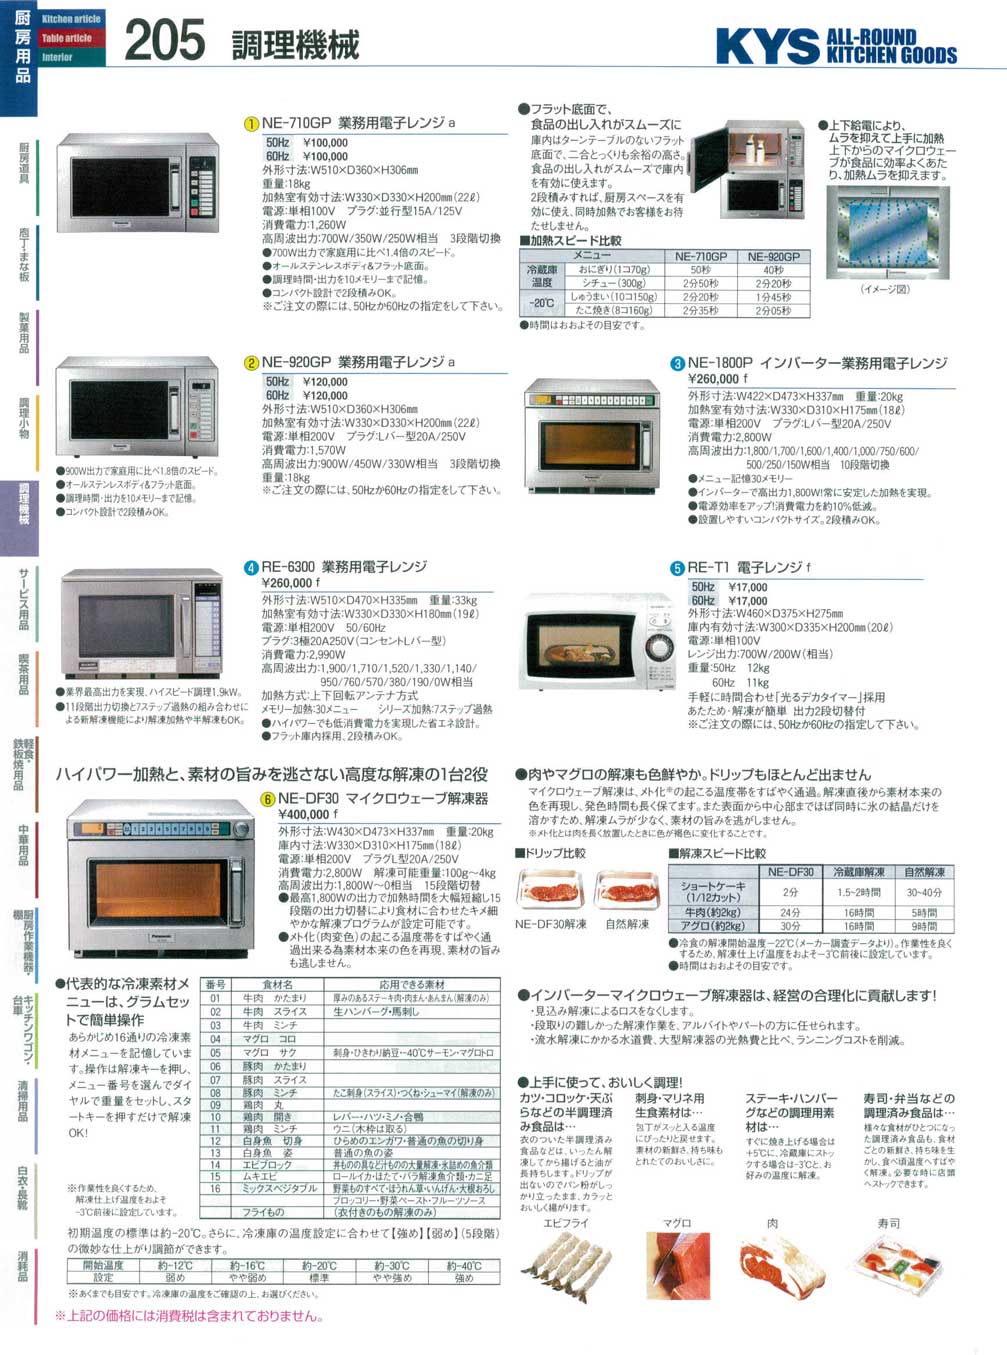 Panasonic NE-710GP 業務用電子レンジ